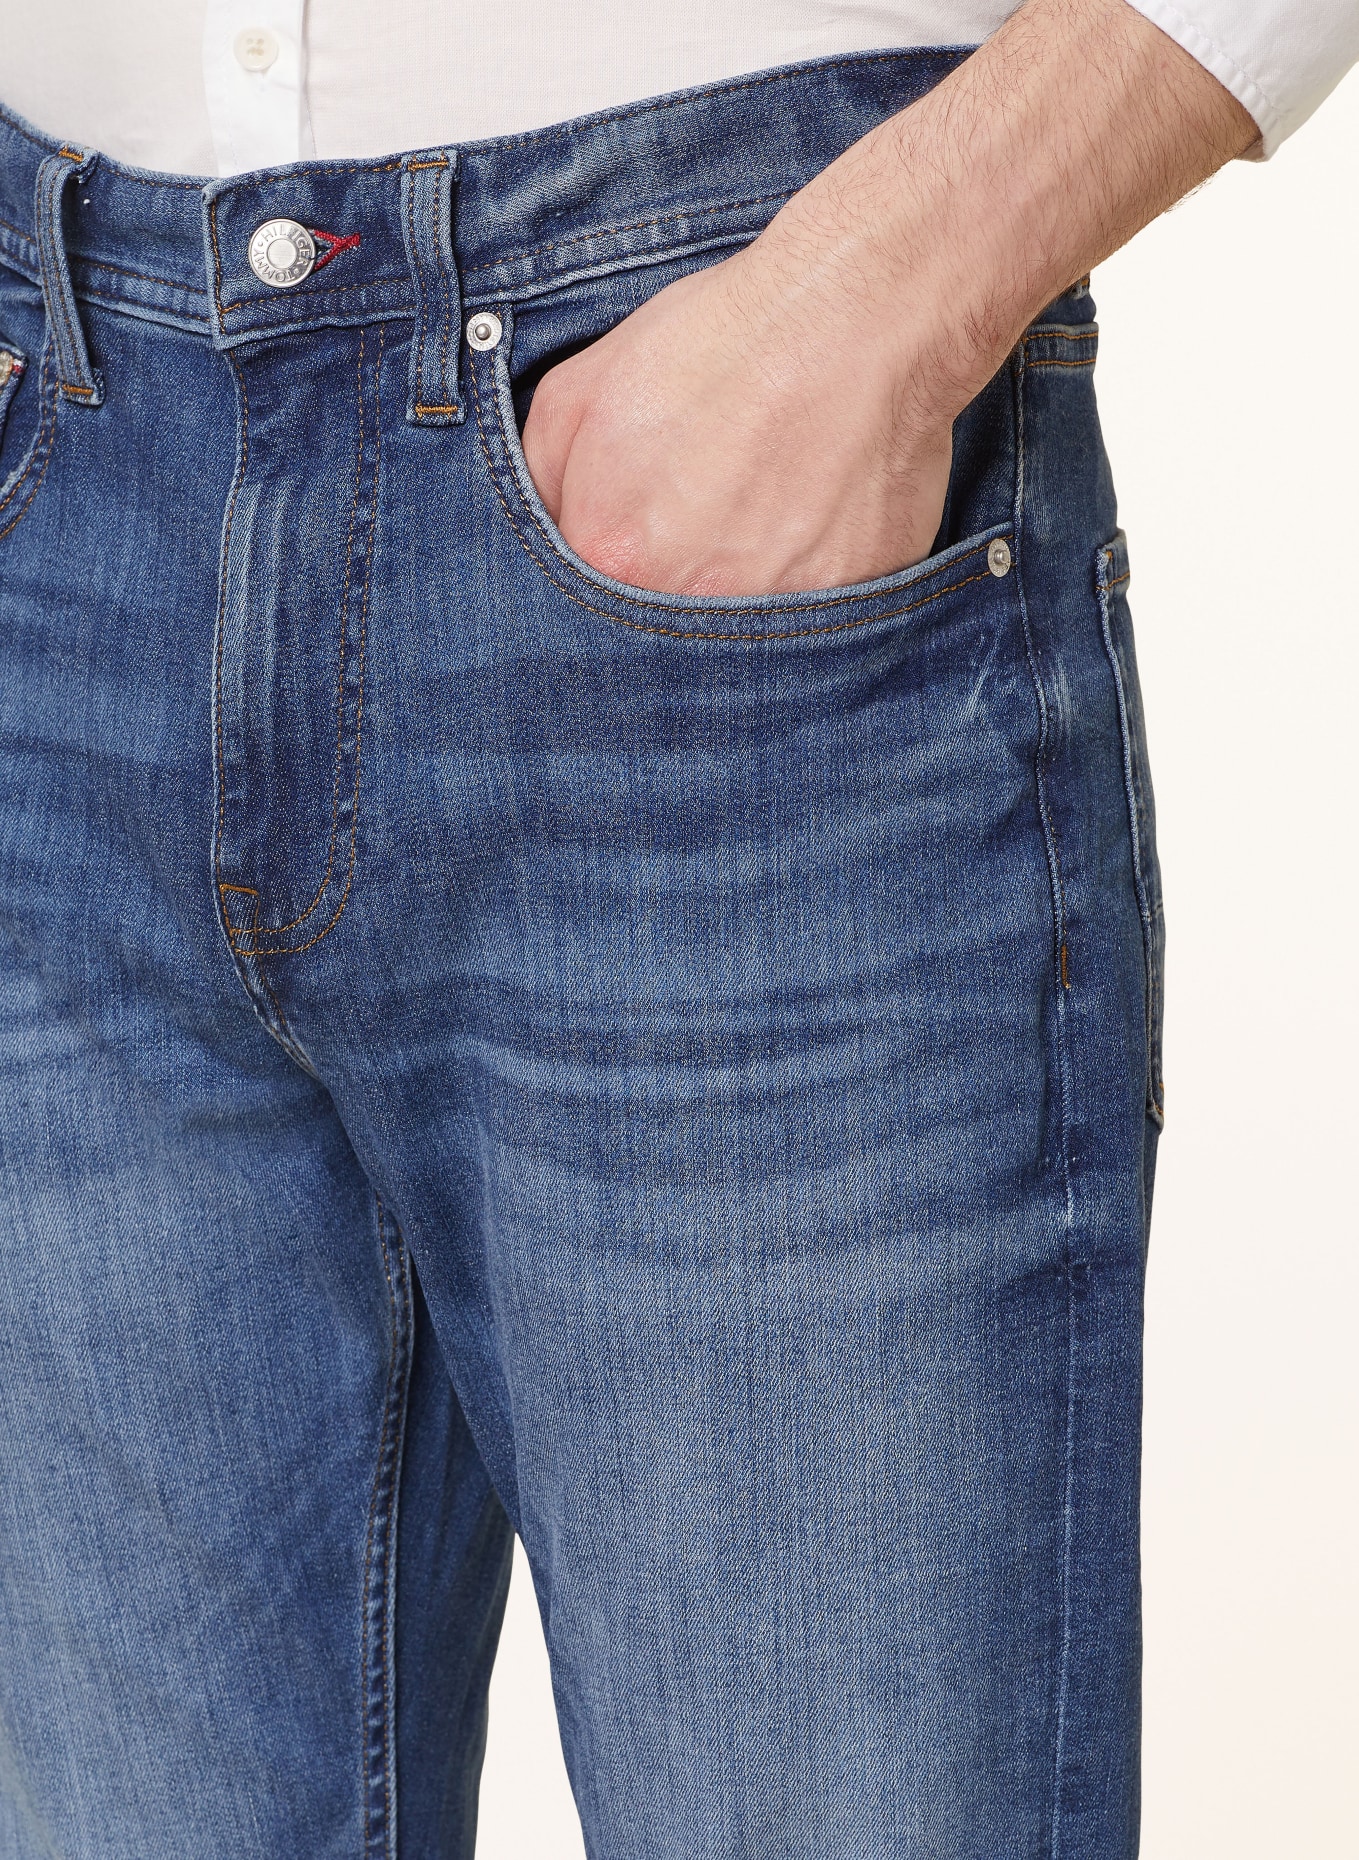 TOMMY HILFIGER Jeans HOUSTON Slim Taper Fit, Farbe: 1BQ Tumon (Bild 5)